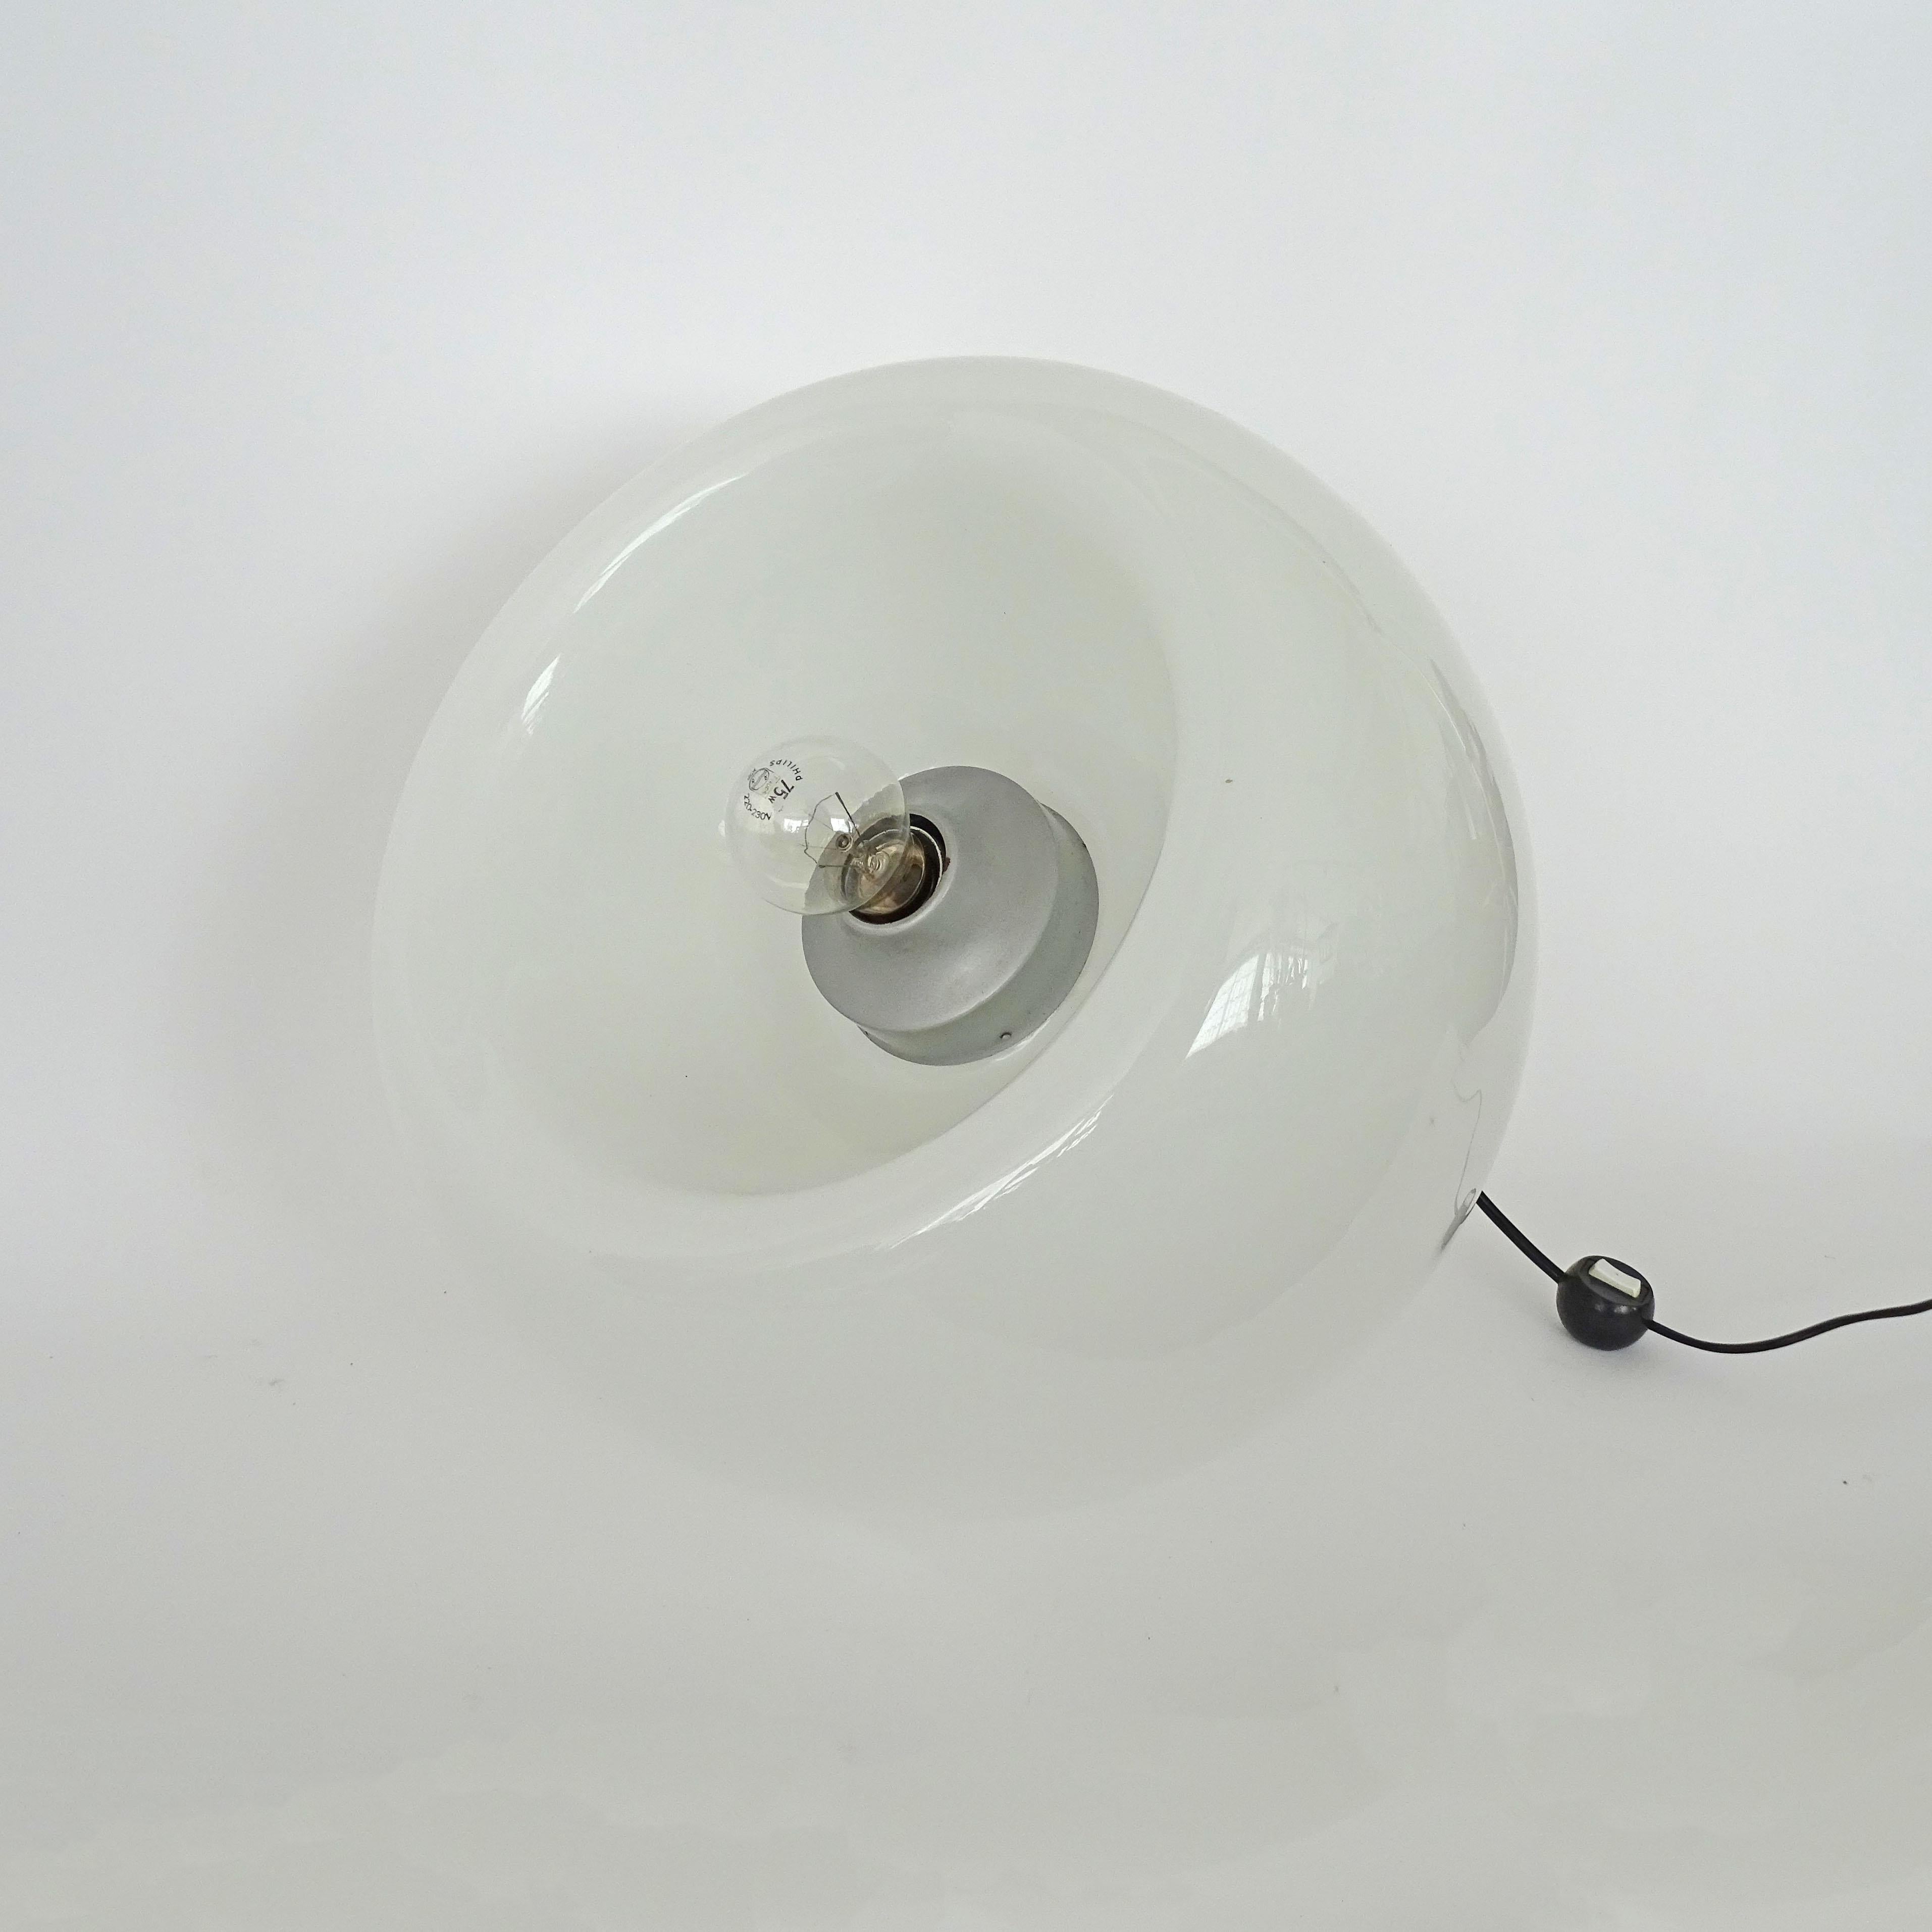 Mid-20th Century Eleonore Peduzzi Riva Vacuna Murano Glass Table Lamp for Artemide, 1968 For Sale